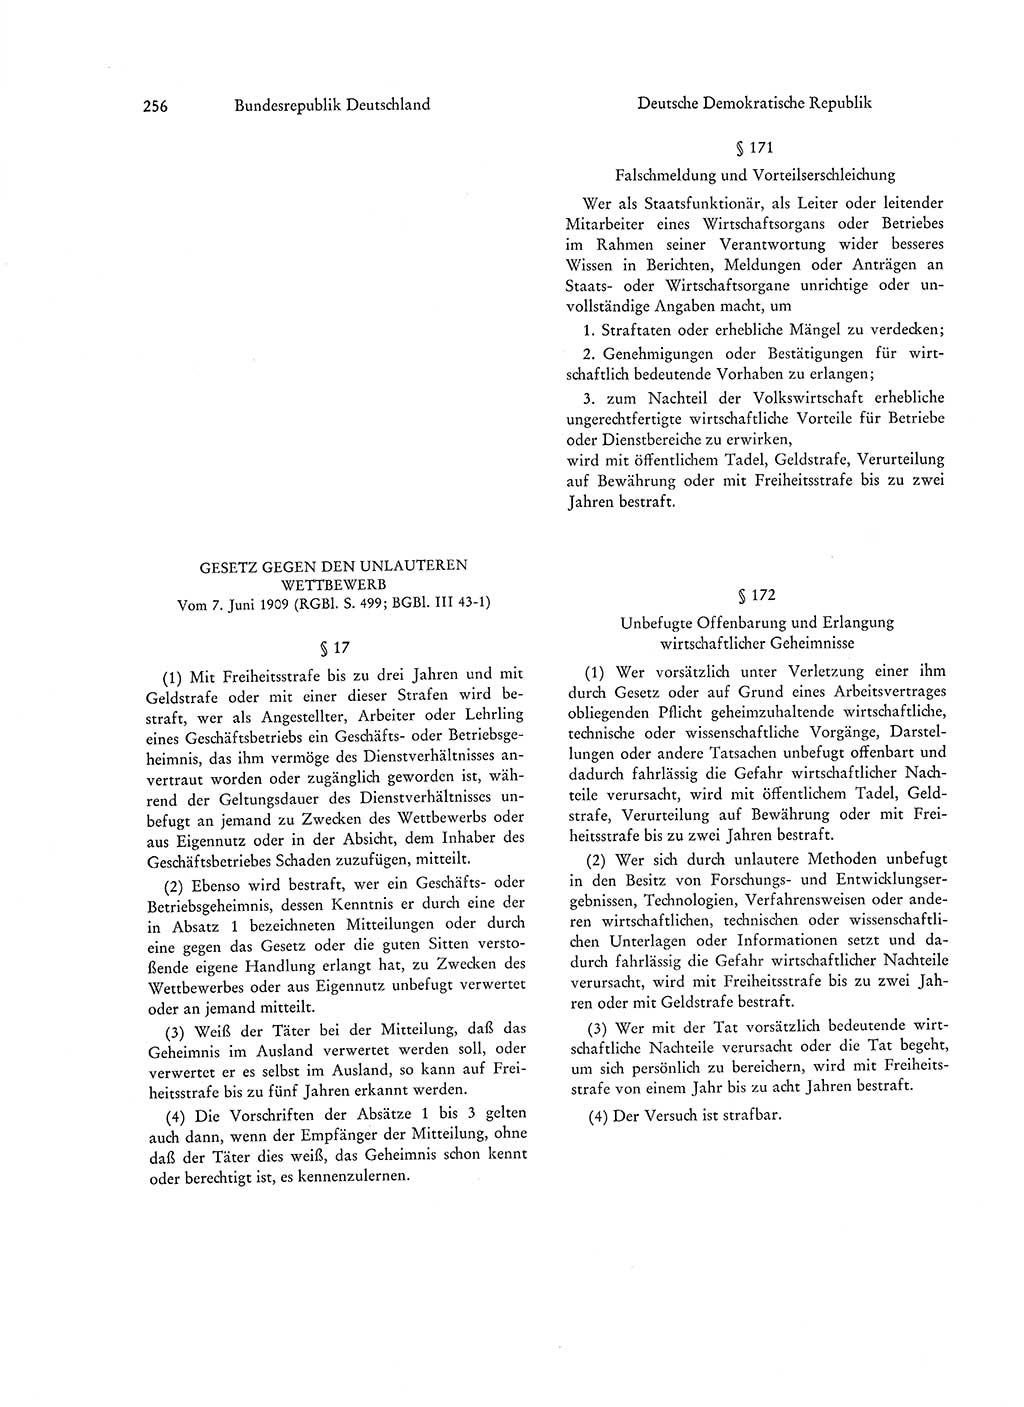 Strafgesetzgebung in Deutschland [Bundesrepublik Deutschland (BRD) und Deutsche Demokratische Republik (DDR)] 1972, Seite 256 (Str.-Ges. Dtl. StGB BRD DDR 1972, S. 256)